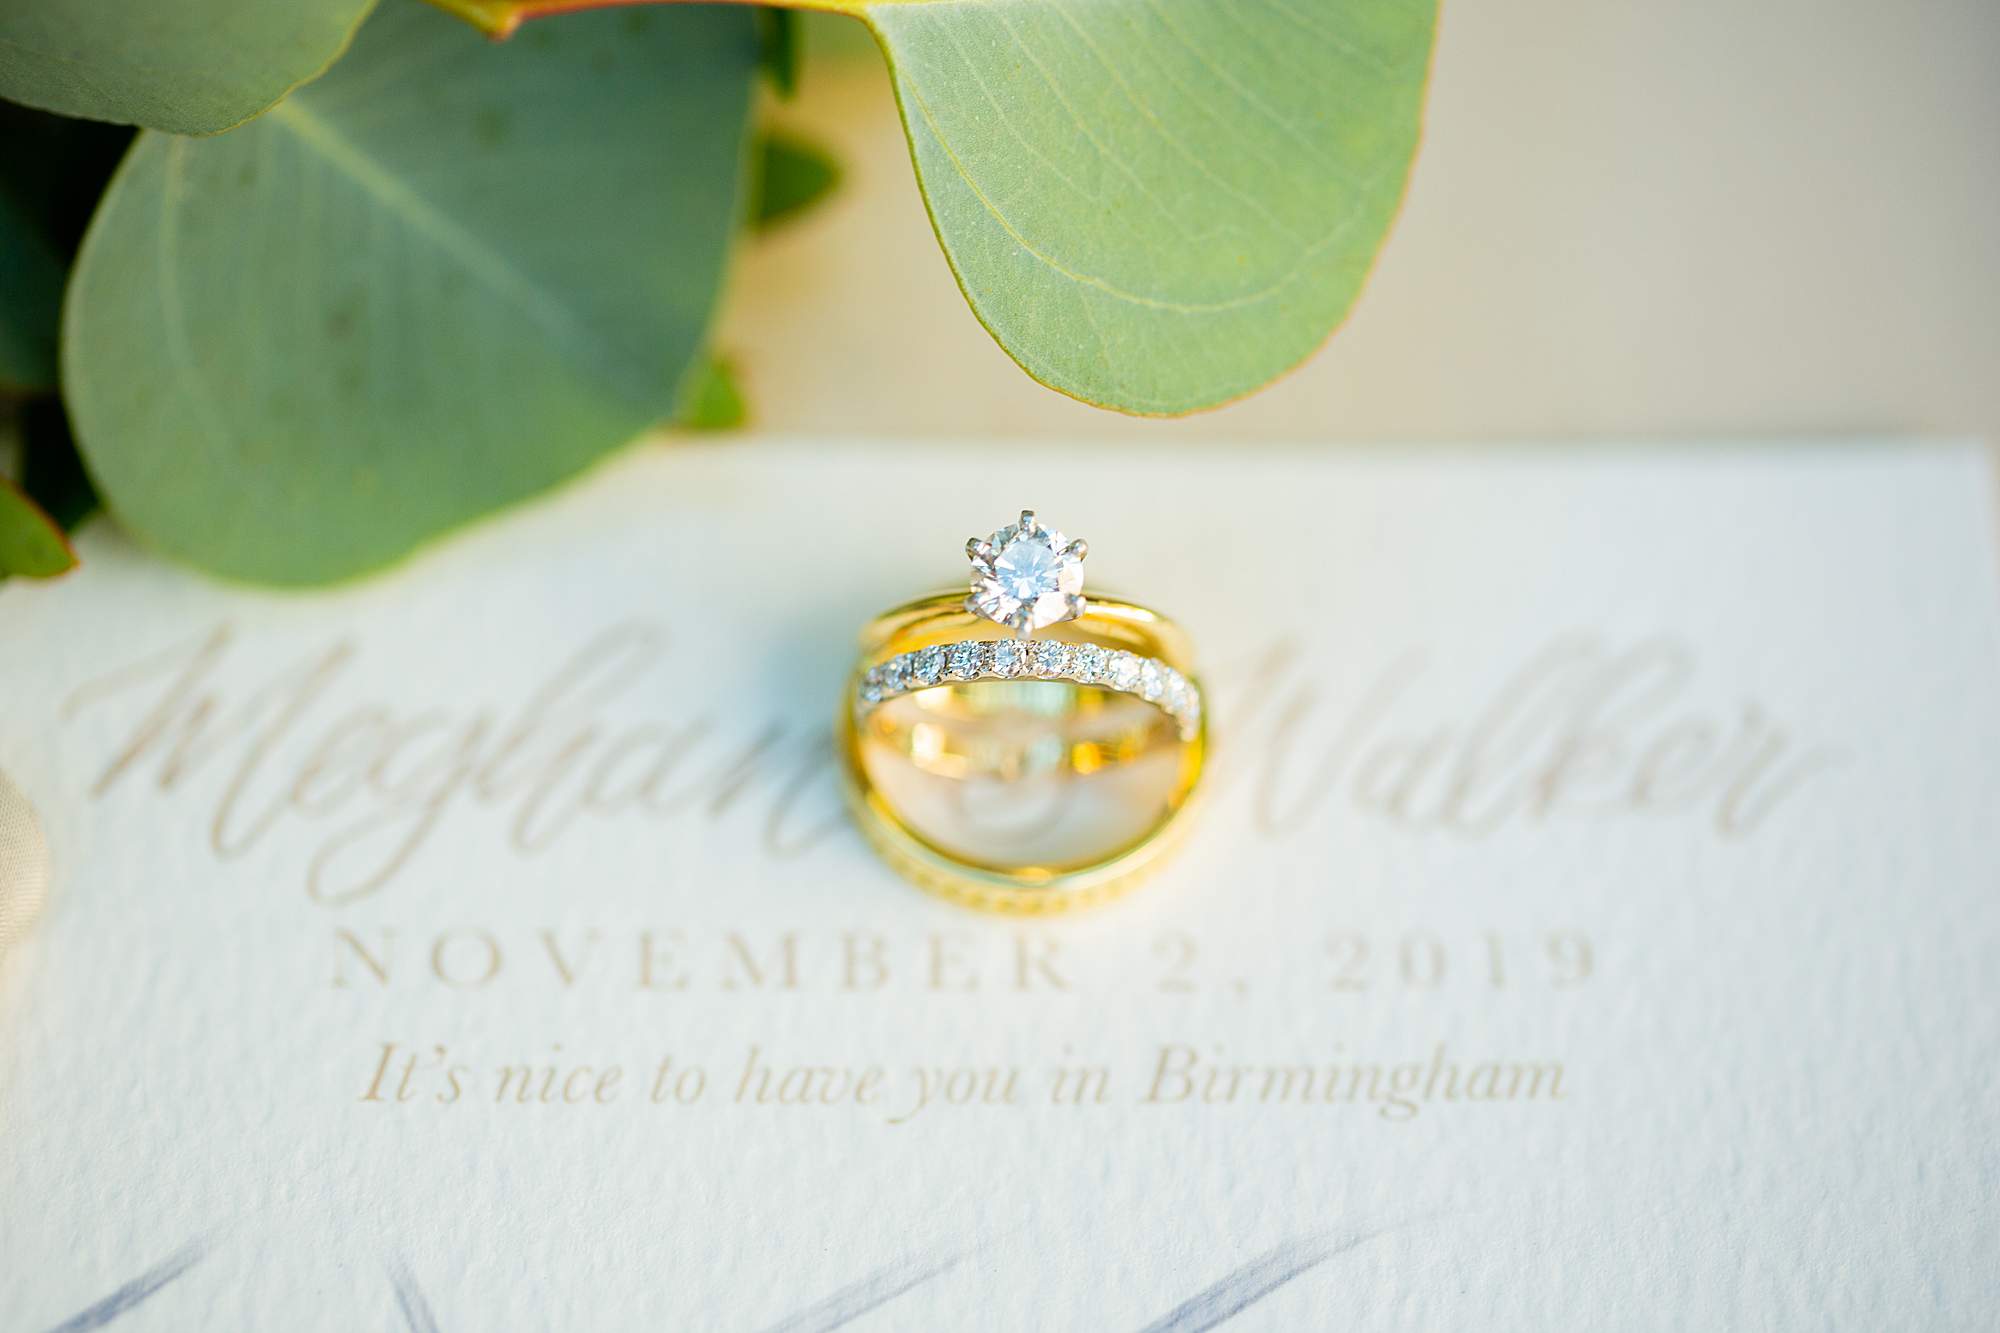 Iron City Wedding Birmingham, AL fall wedding details